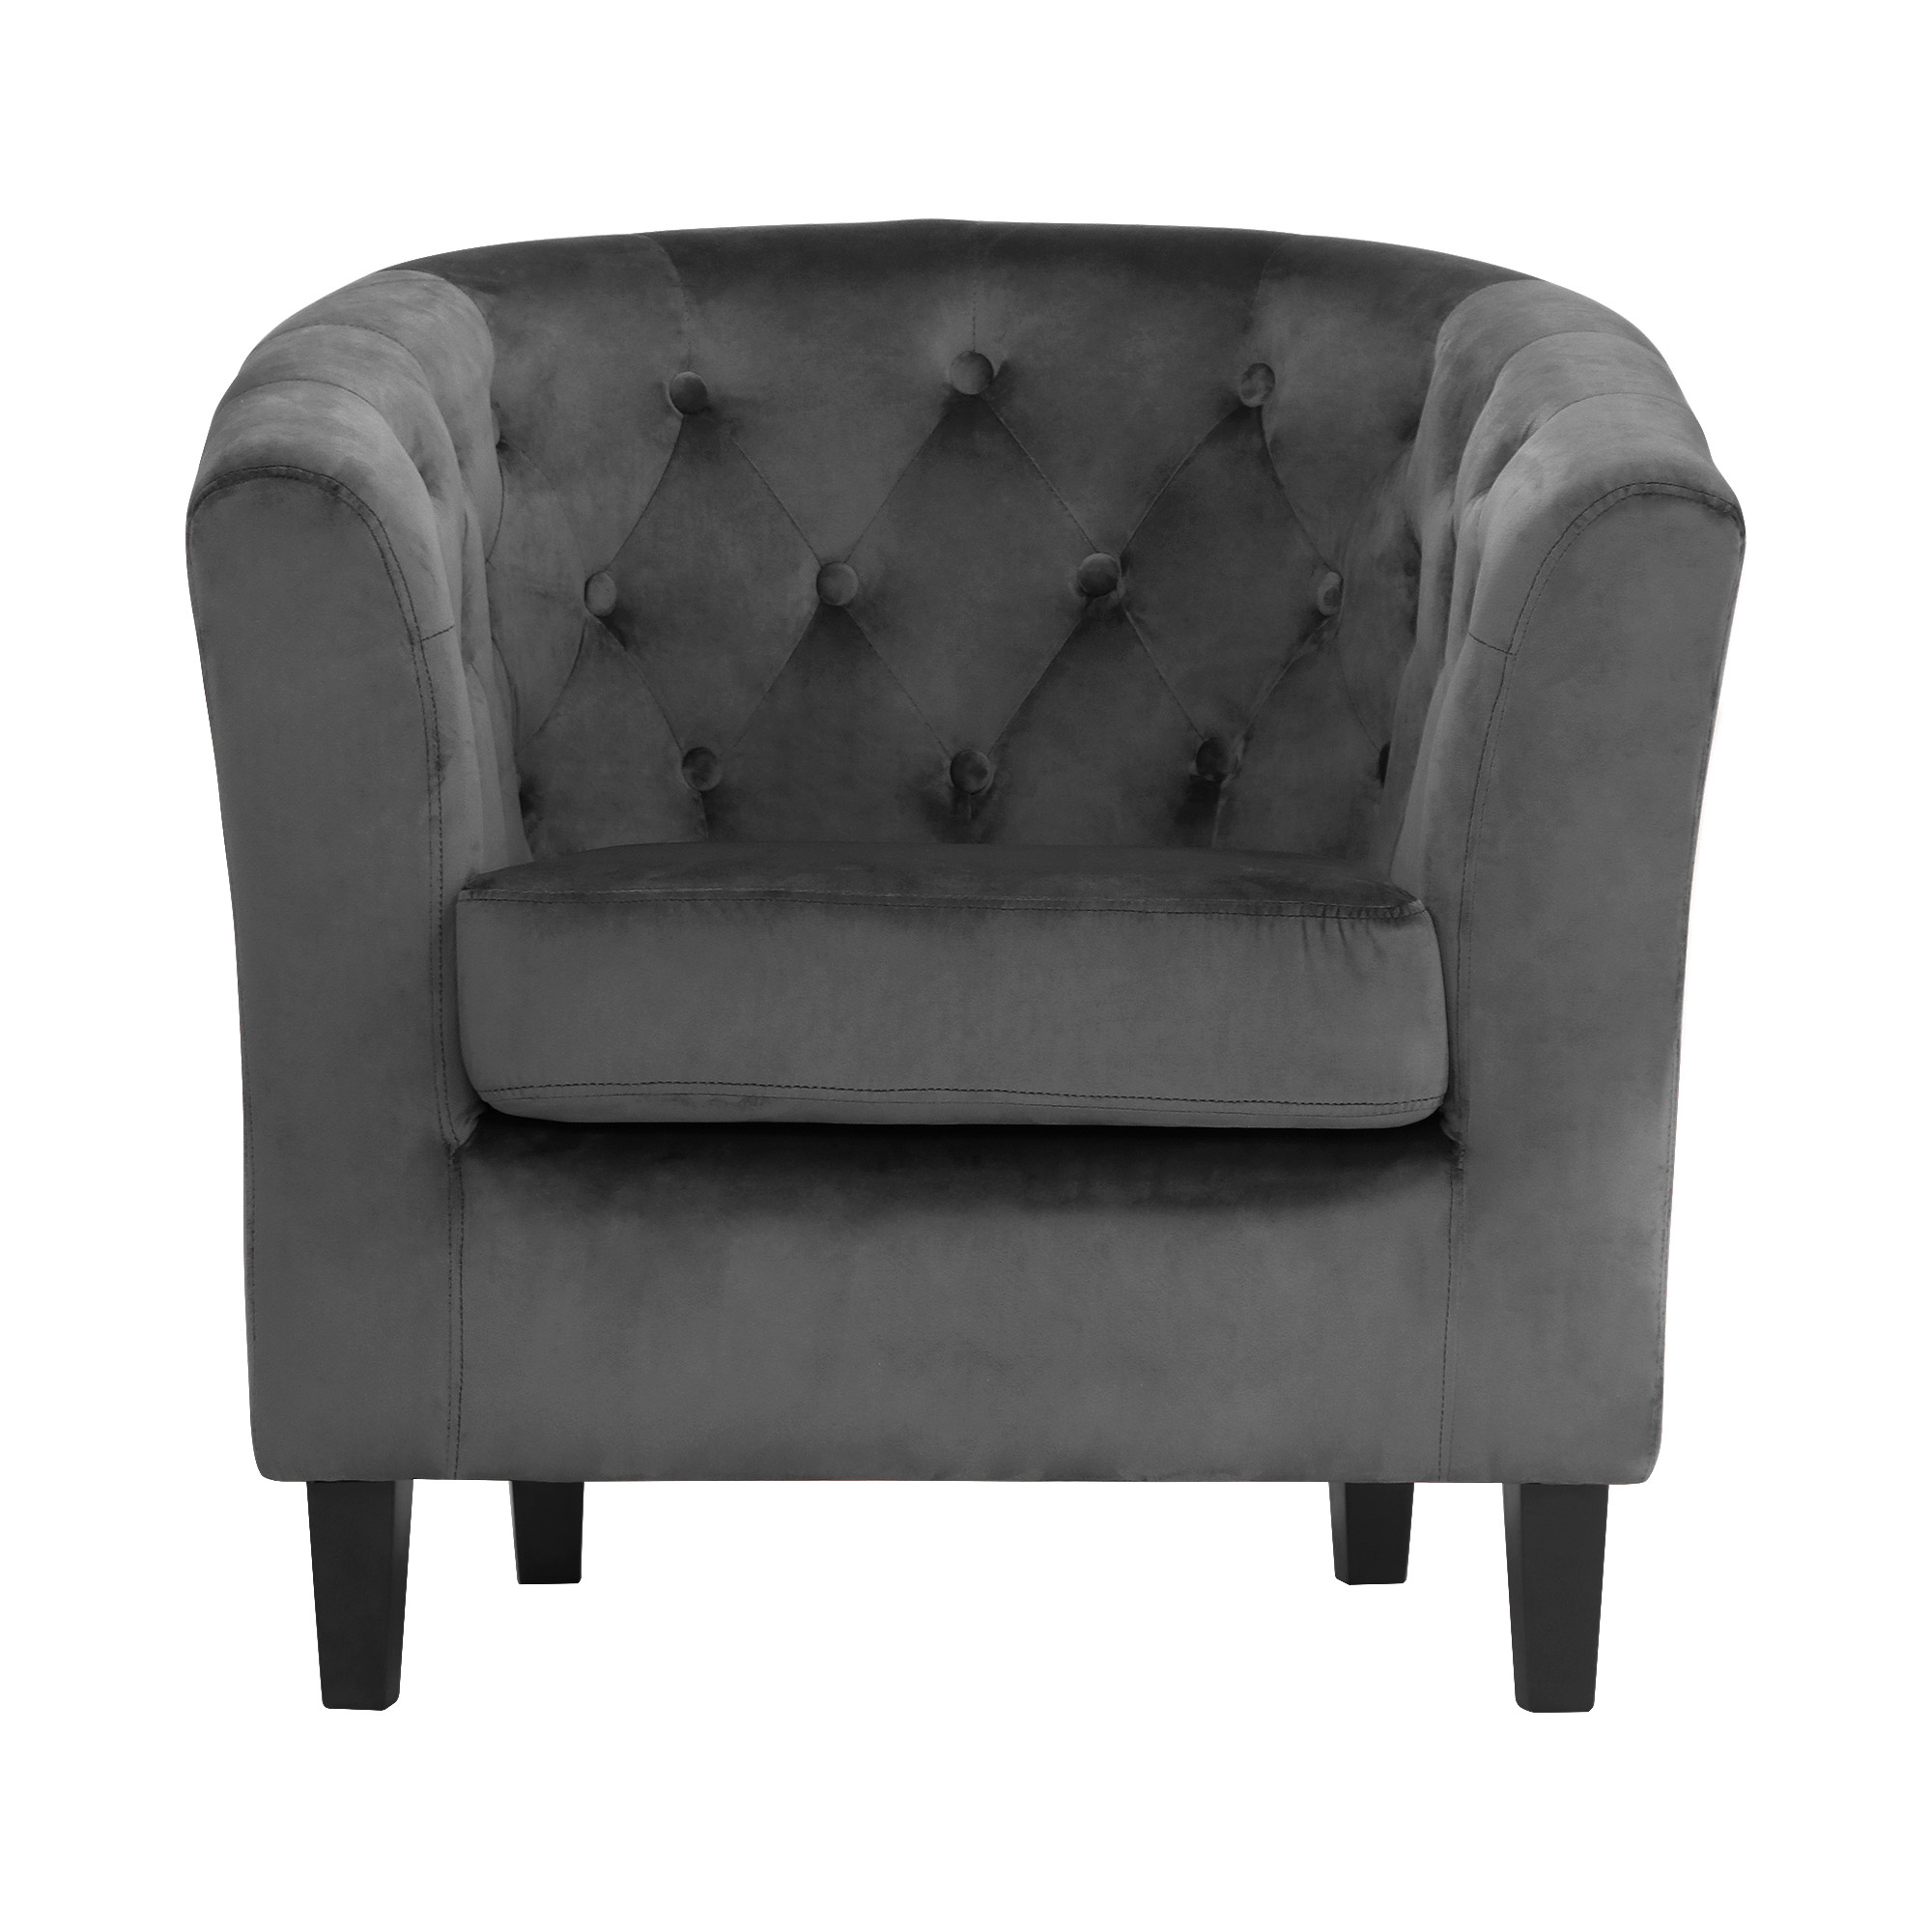 Кресло Shanshi Оливия серое 72x63x71cm, цвет серый - фото 4